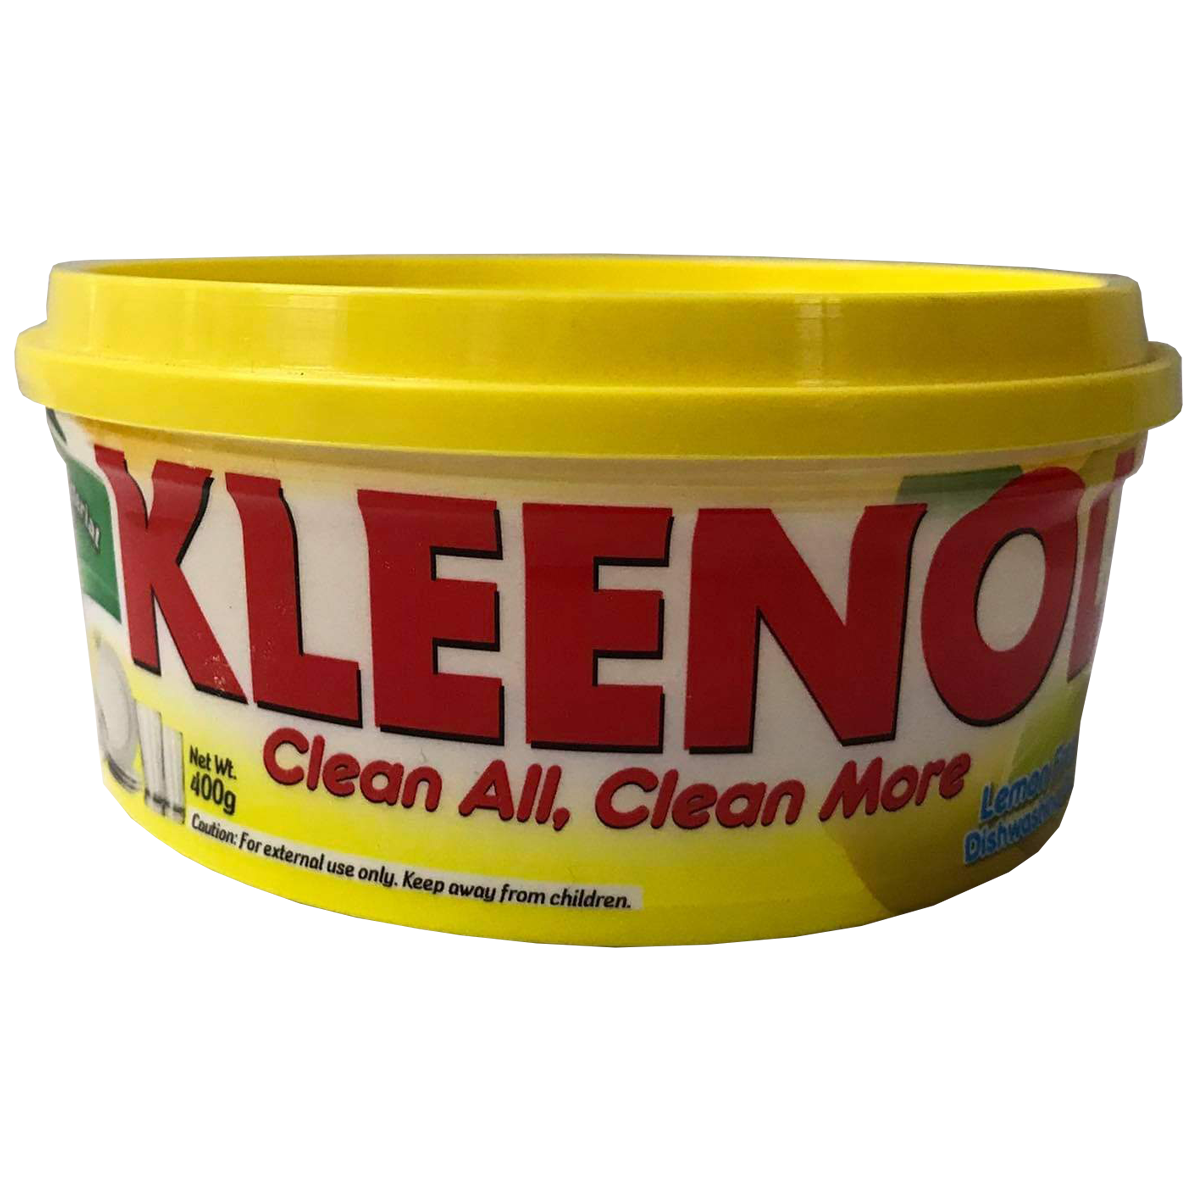 Kleenol Dishwashing Paste, 400g